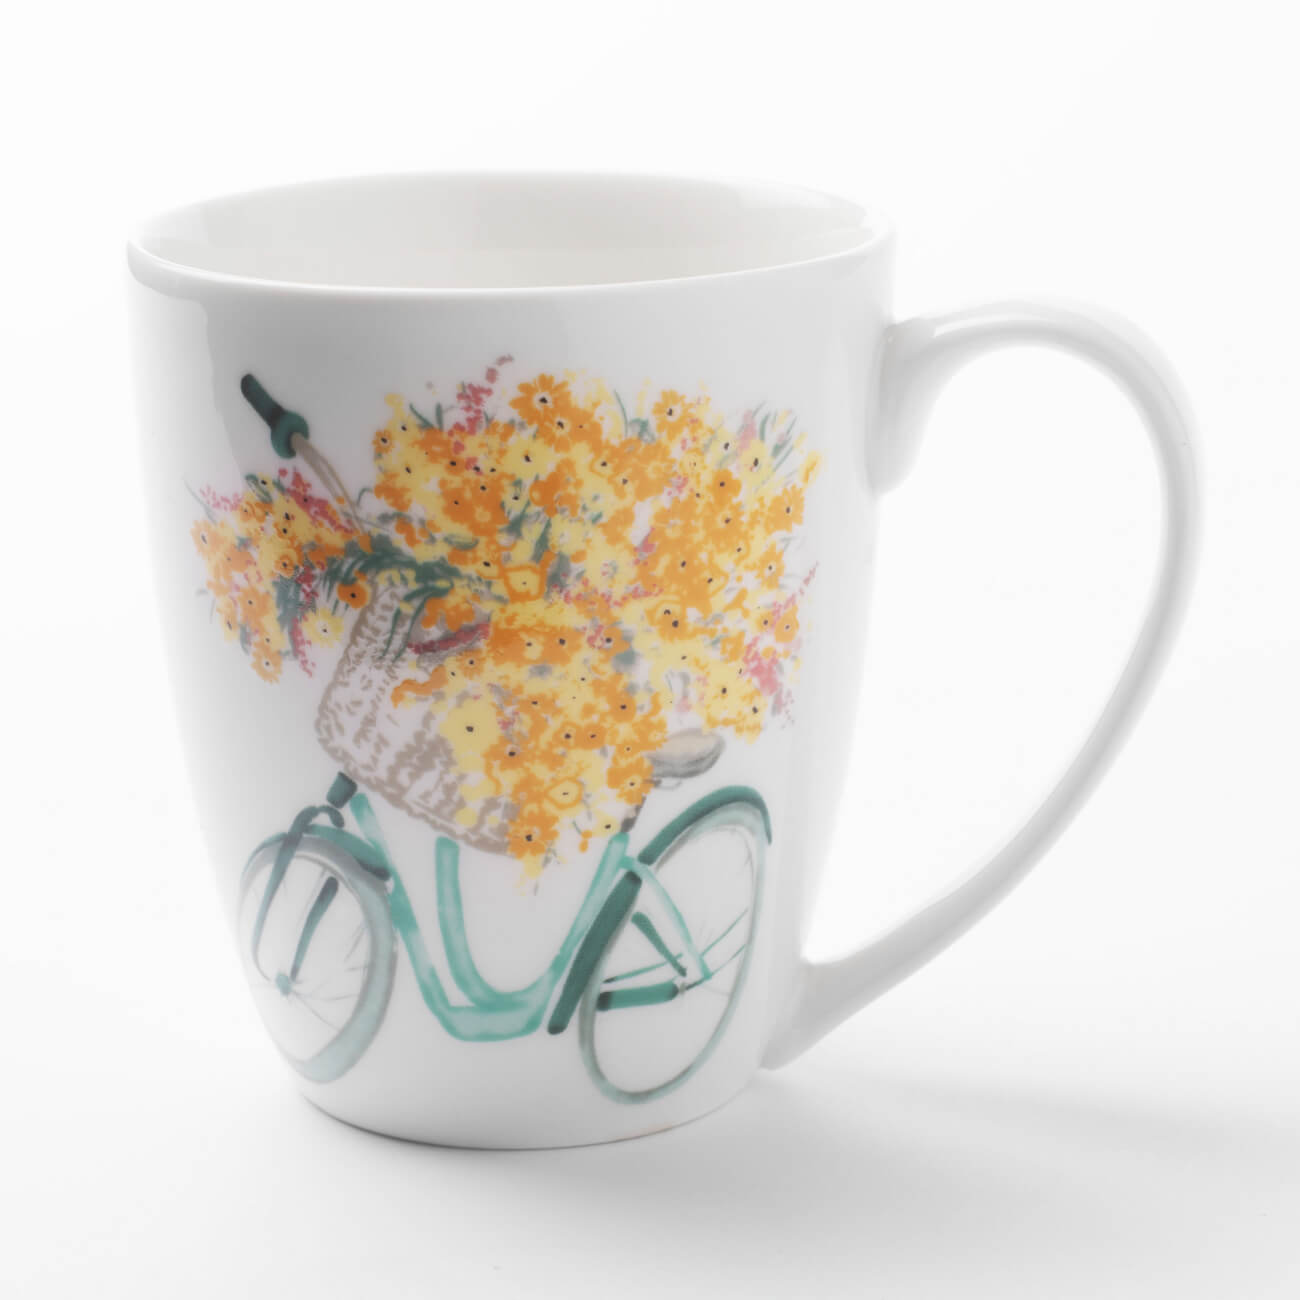 Кружка, 320 мл, фарфор N, белая, Велосипед с цветами, Secret garden кружка just mugs garden botanics 415 мл